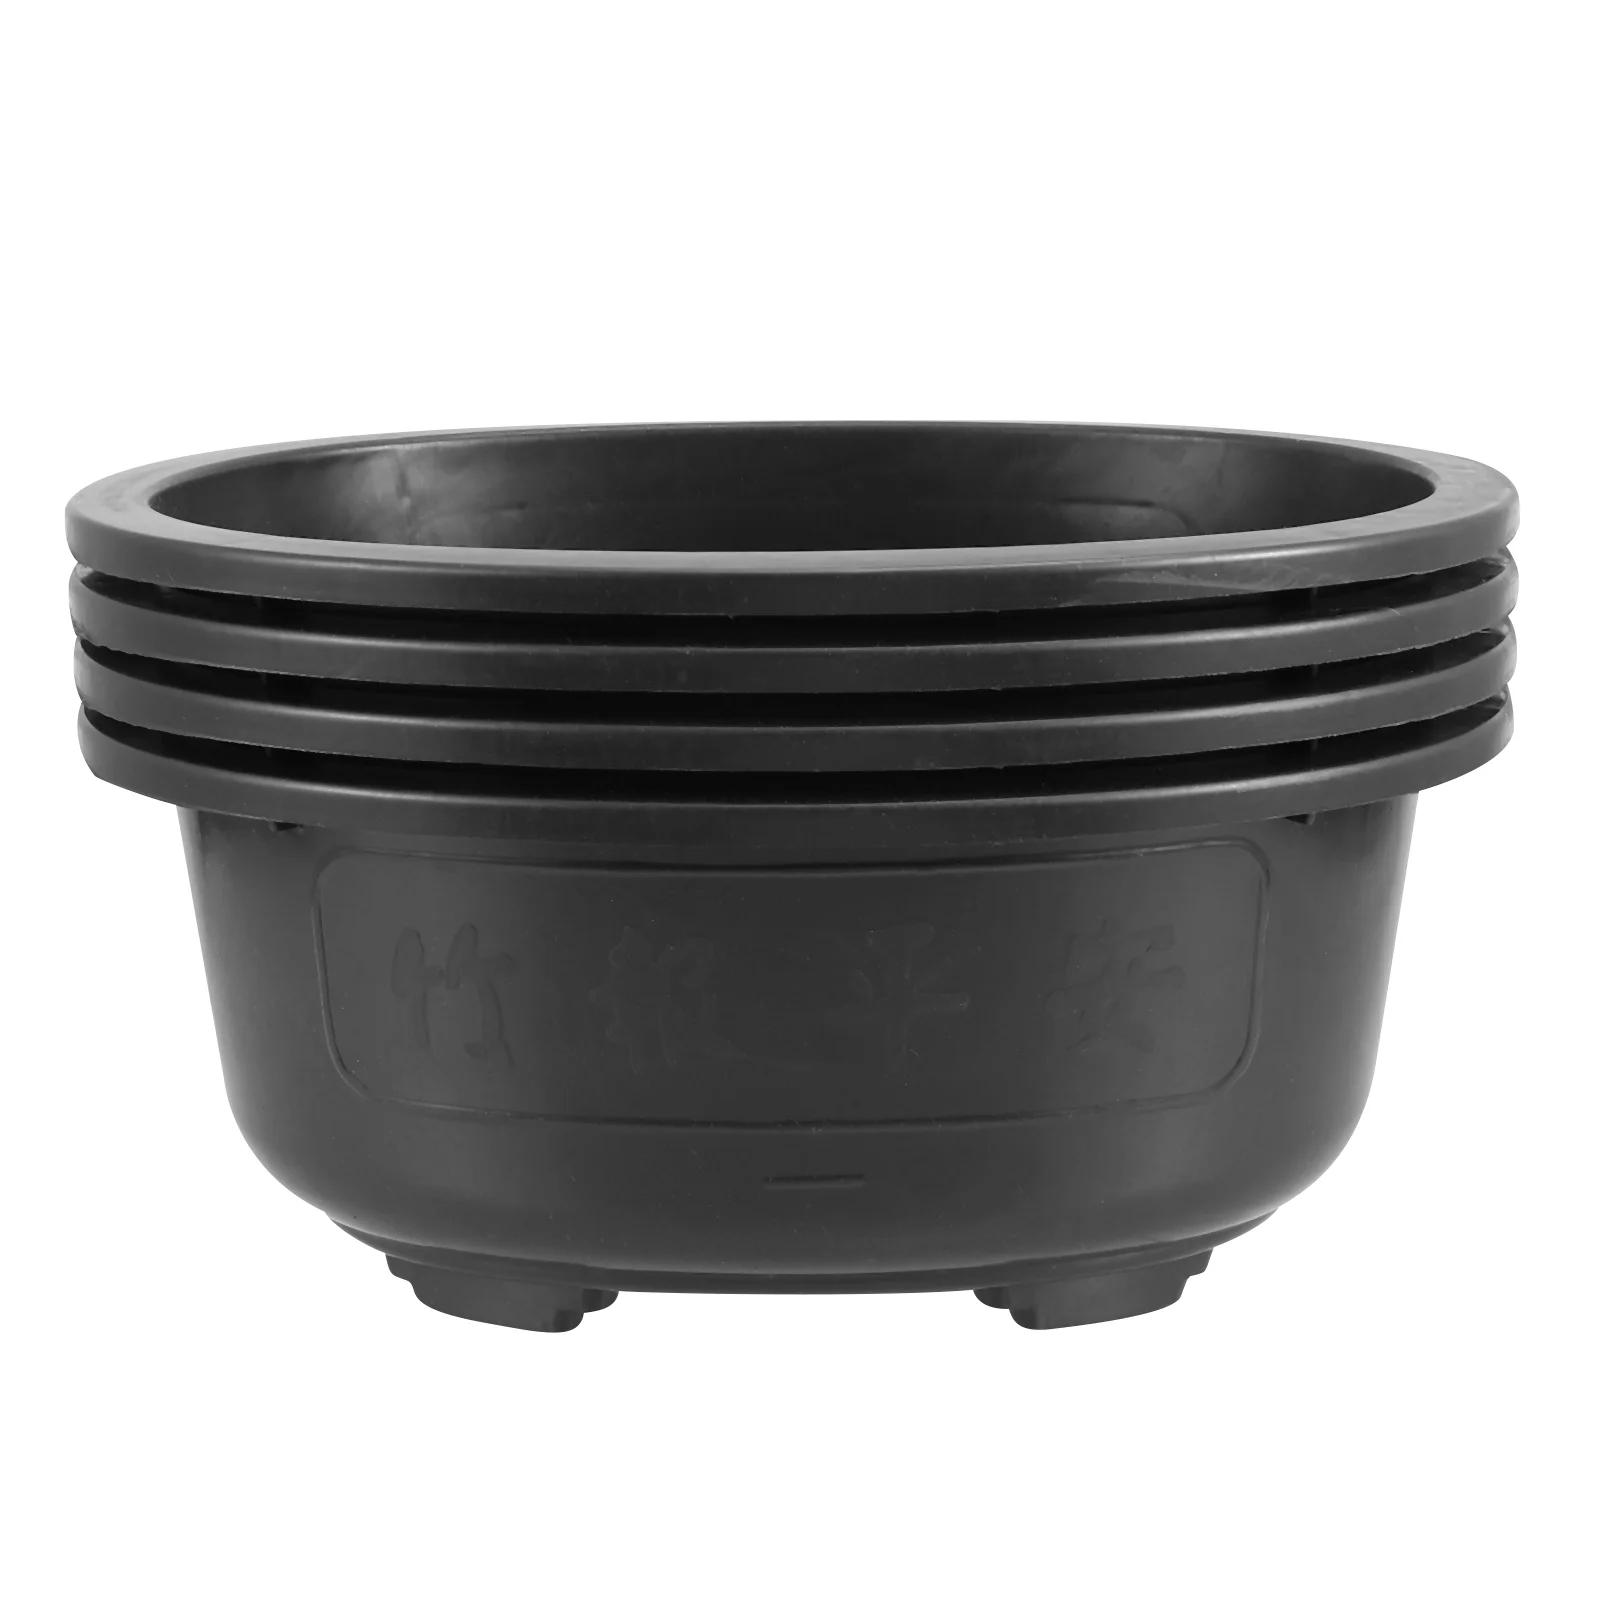 

4 Pcs Oval Flower Pot Small Plastic Container Holder Planting Basins Bonsai Planter Pots Succulent Household